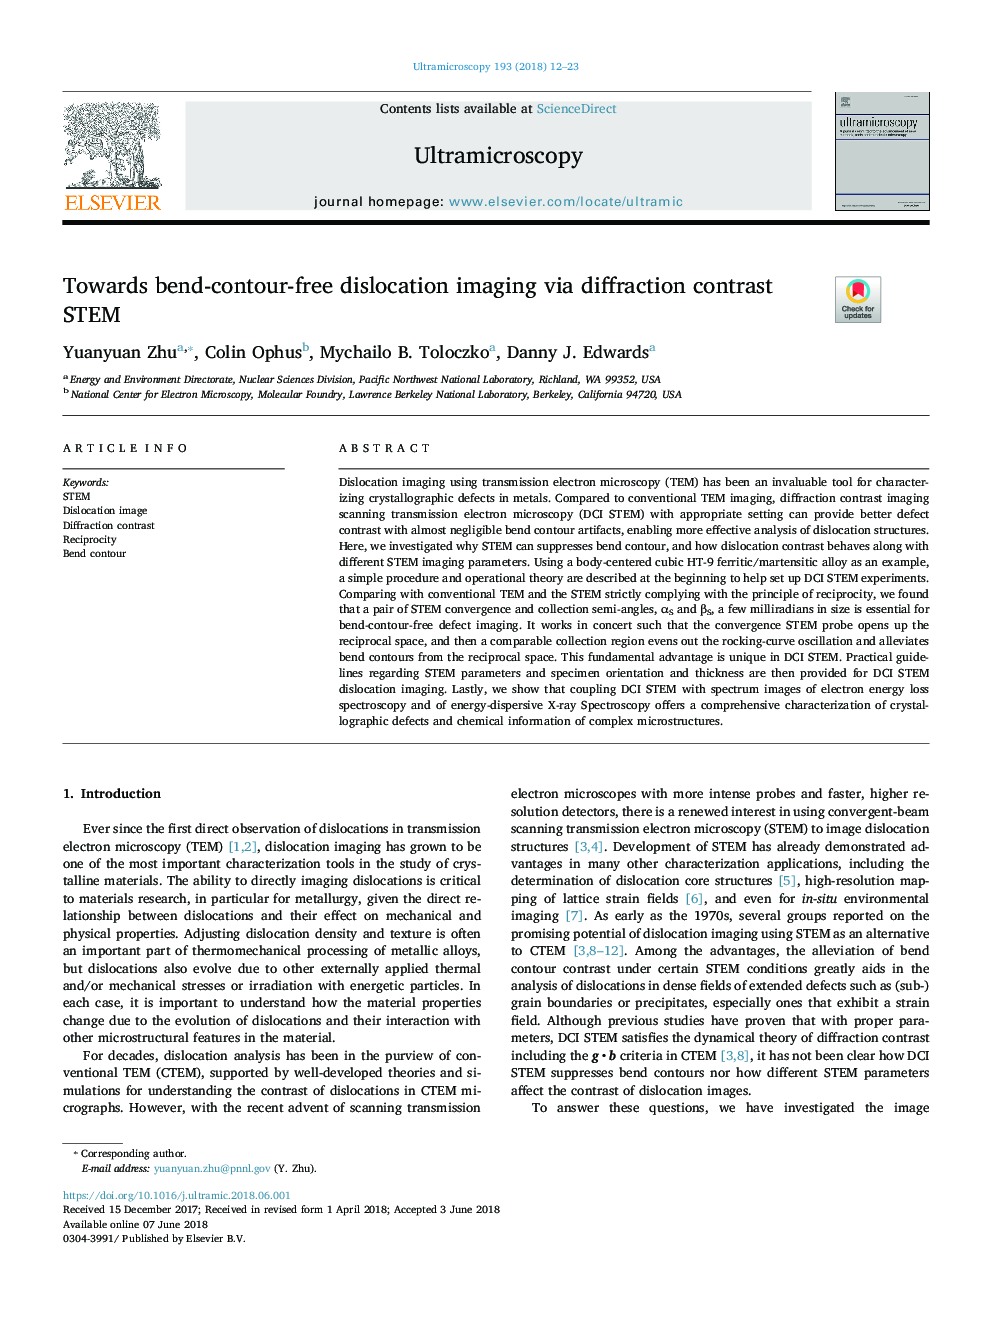 Towards bend-contour-free dislocation imaging via diffraction contrast STEM